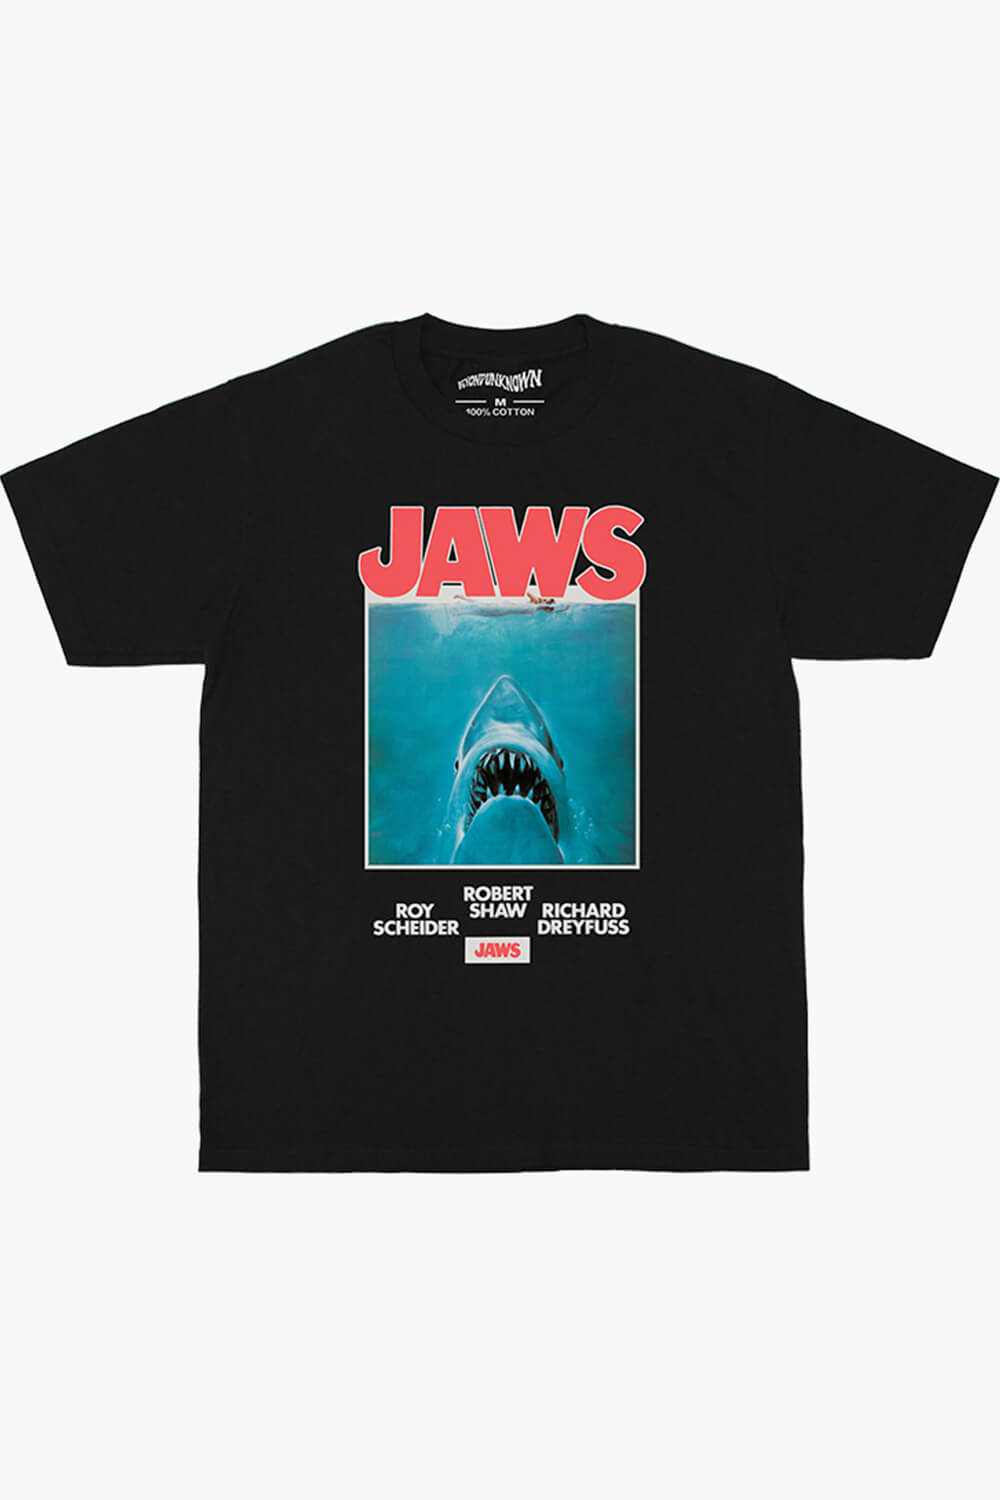 Jaws Movie Poster Shark T-Shirt Horror Aesthetic